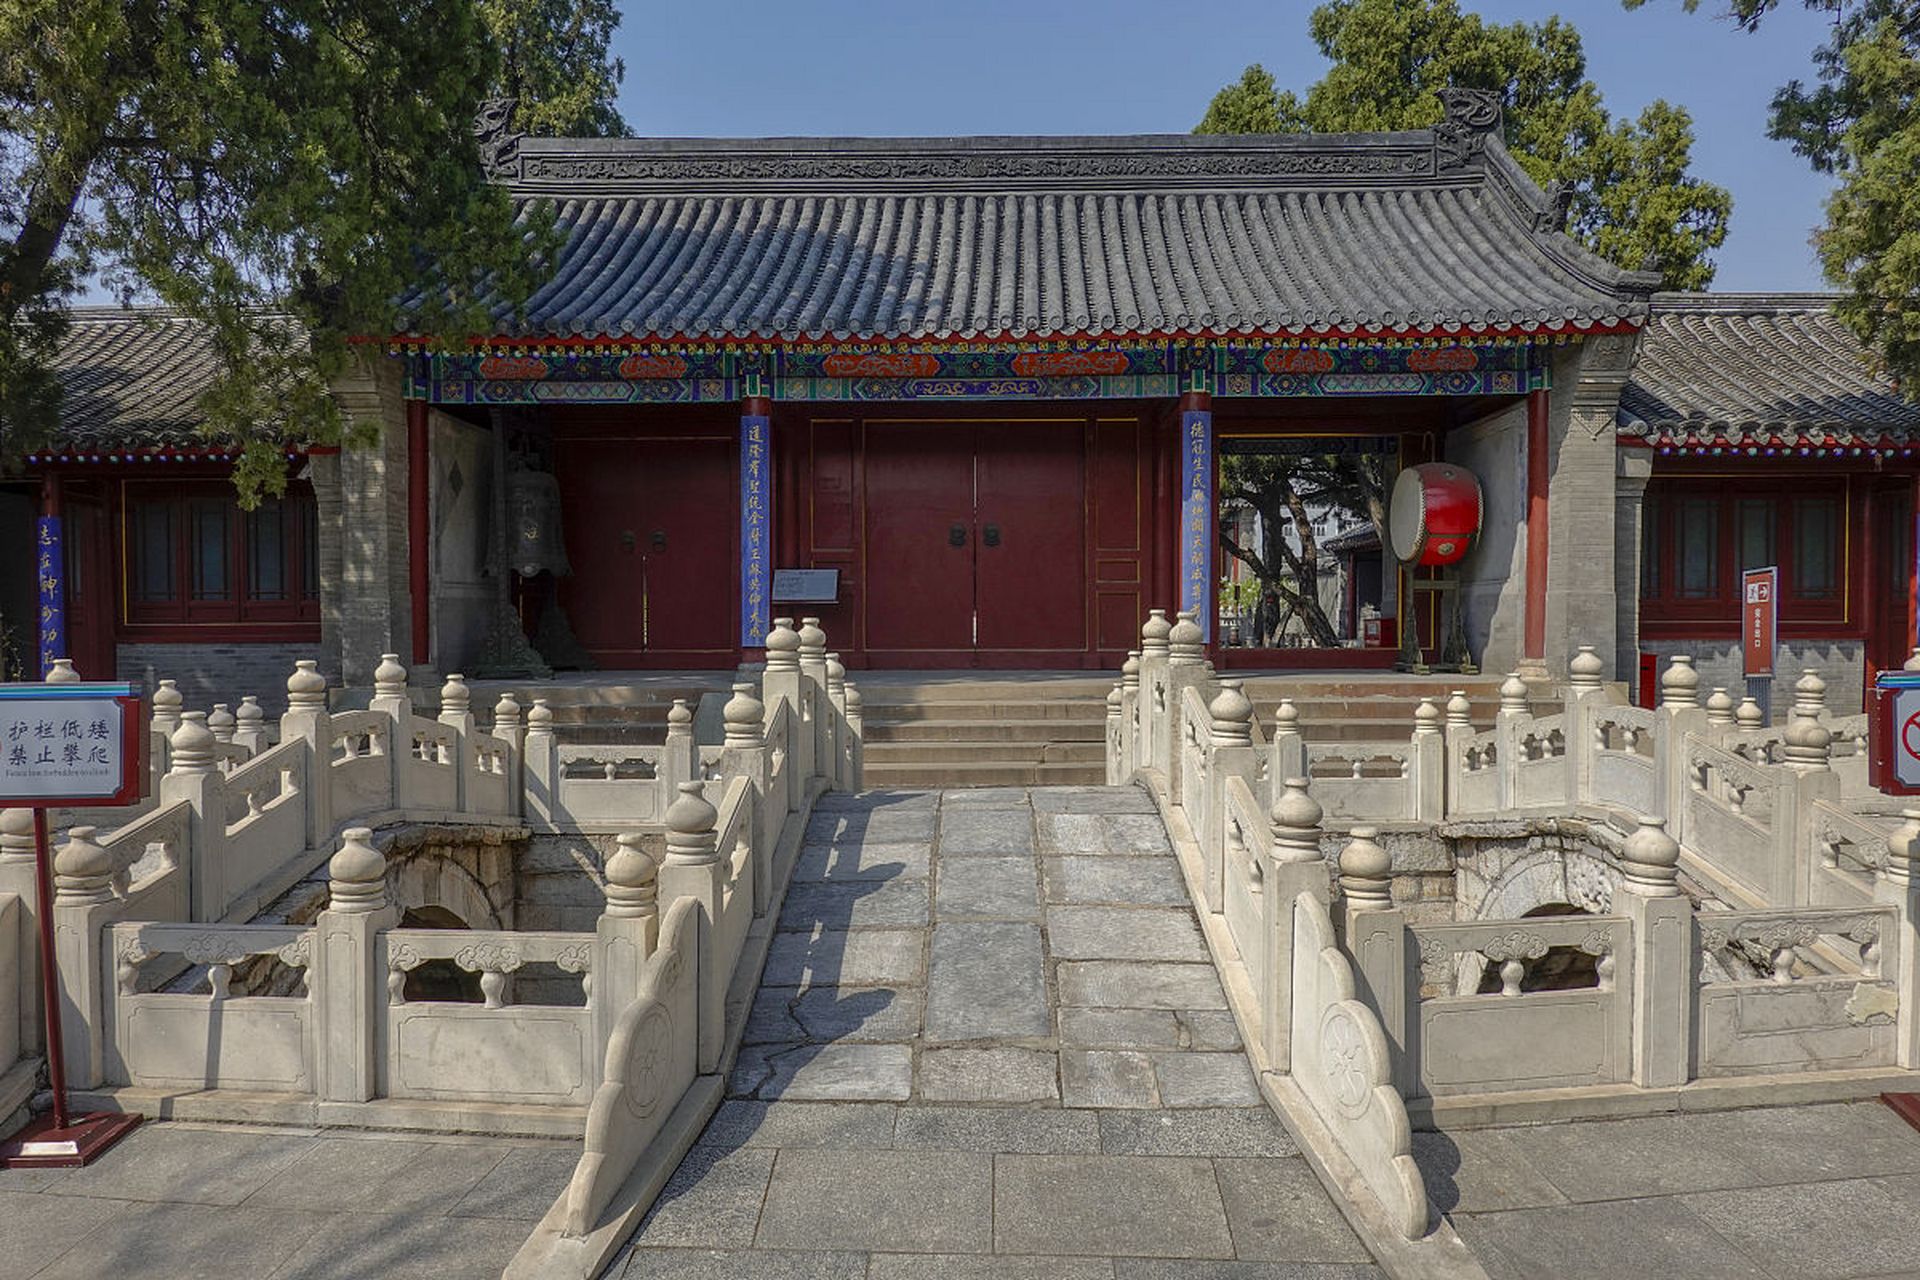 说到天津的旅游景点,蓟州文庙可是个不能错过的好地方!